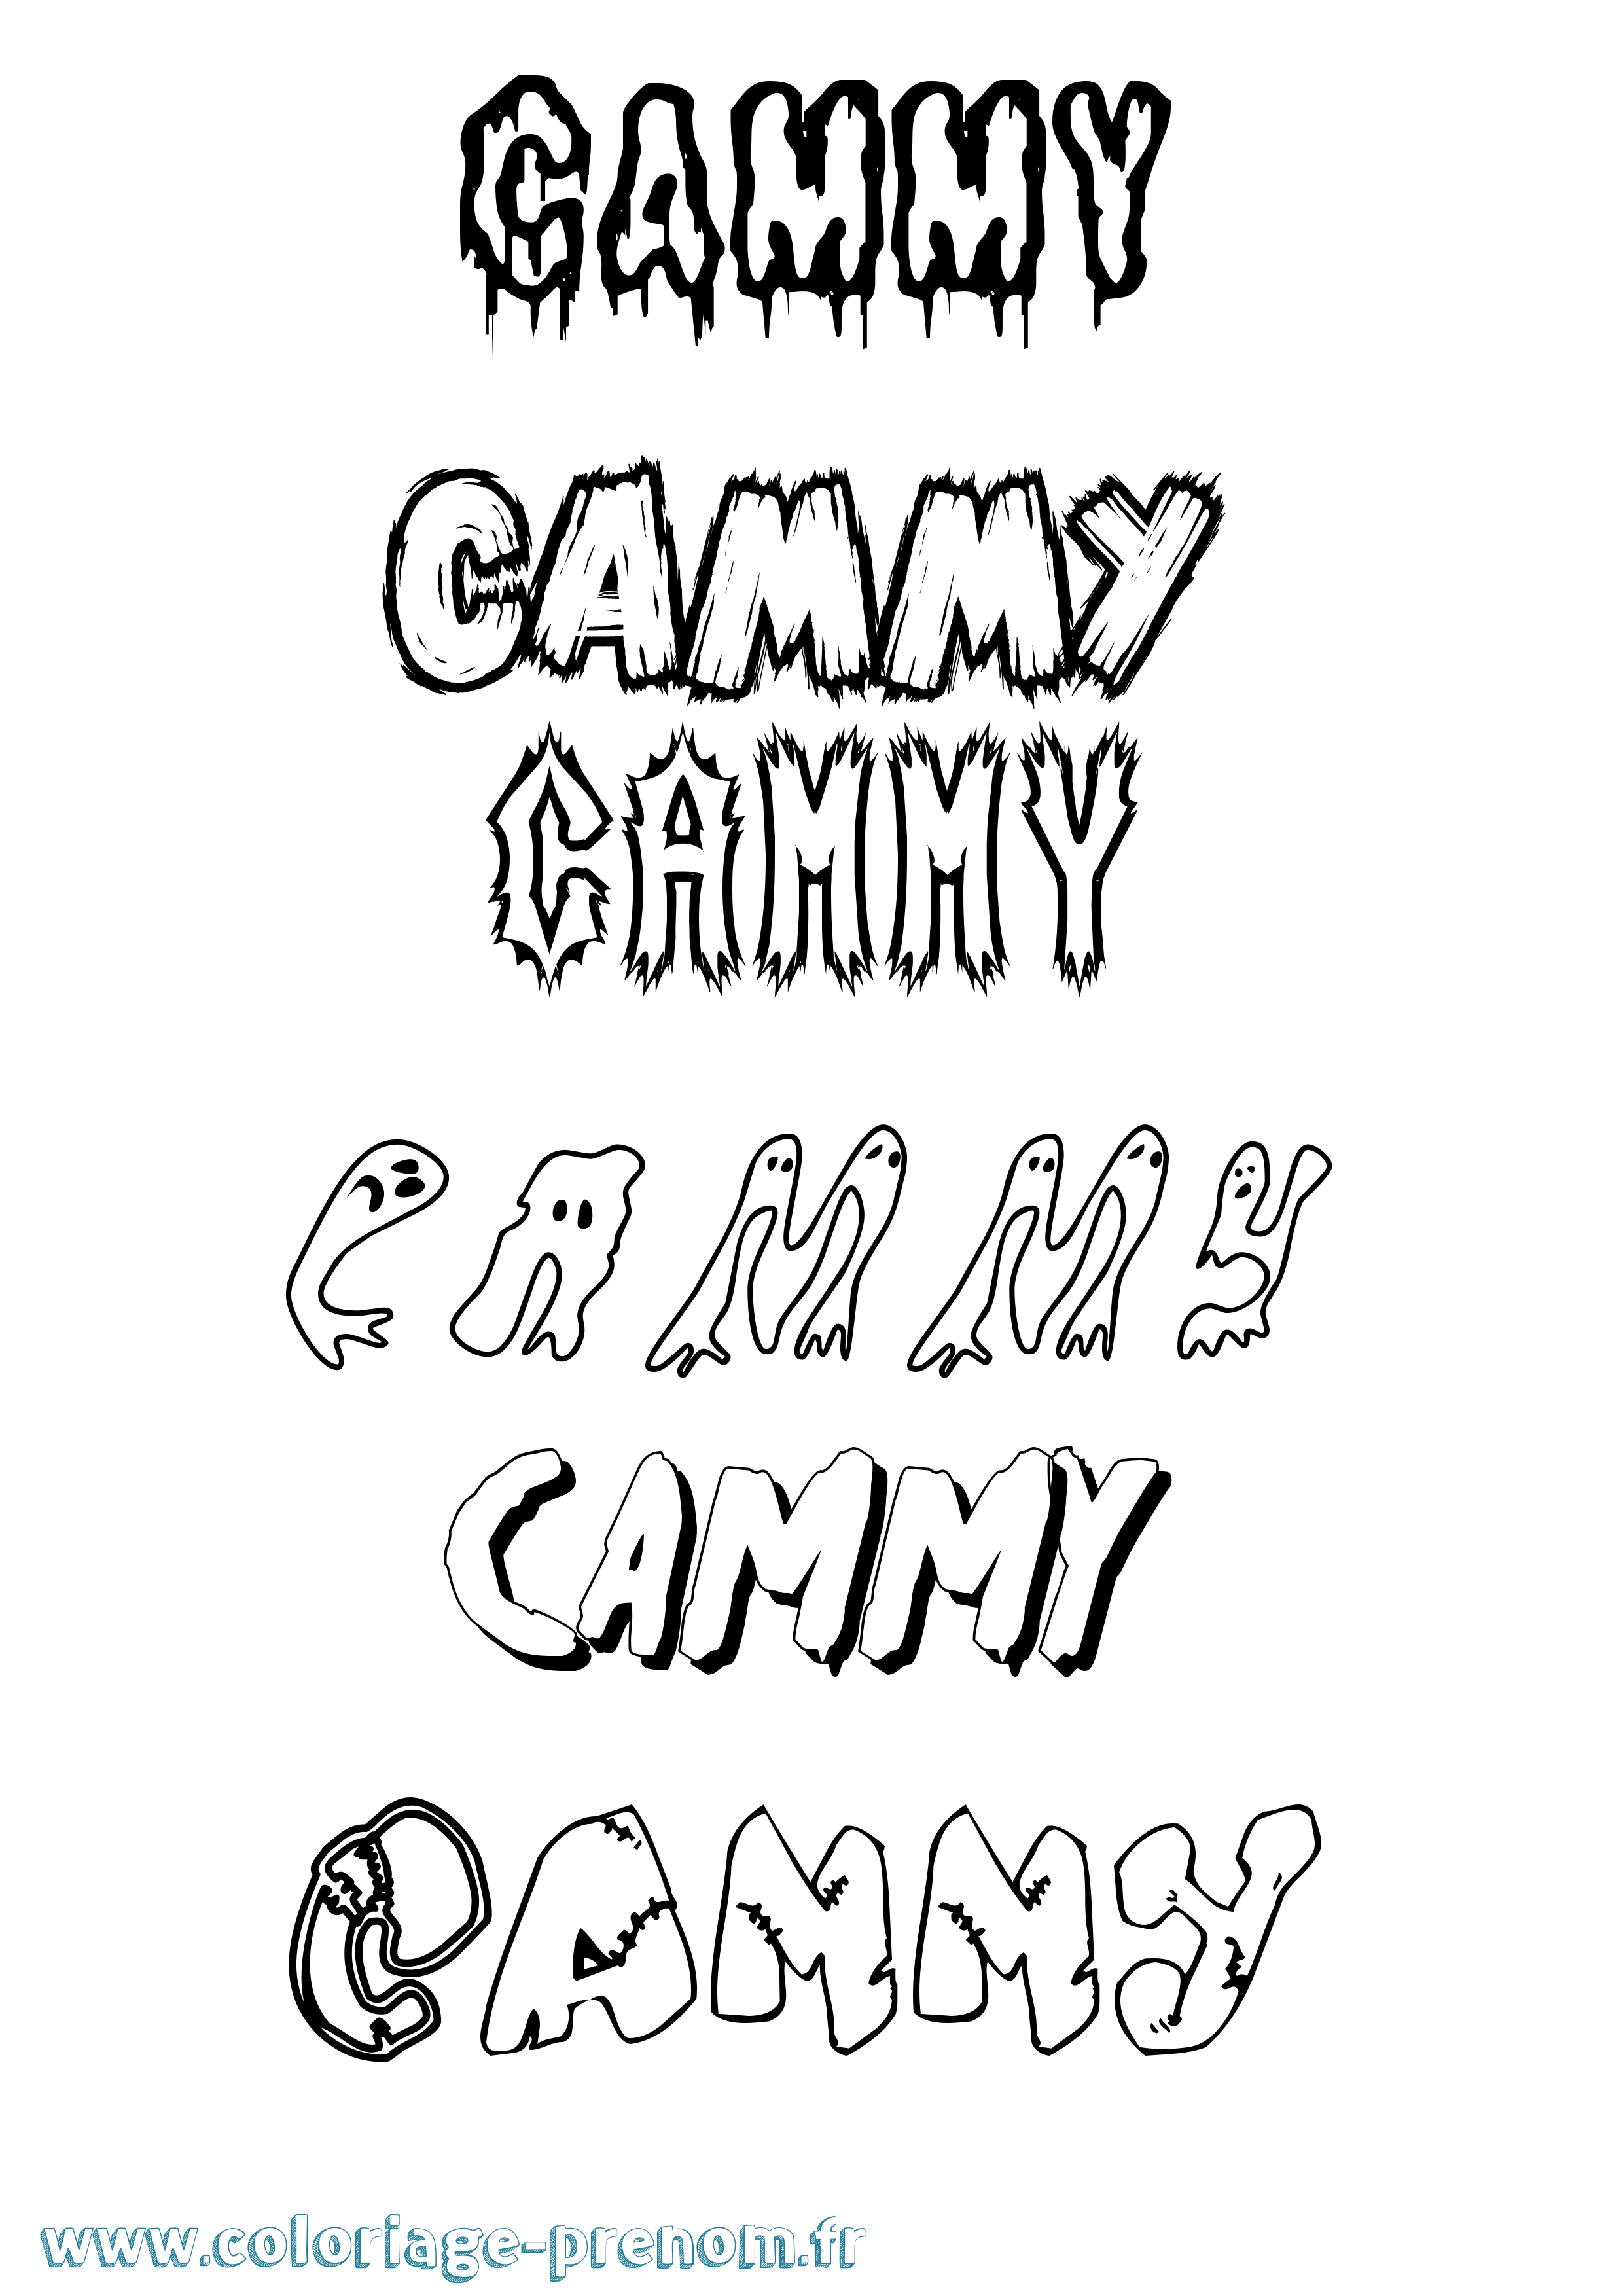 Coloriage prénom Cammy Frisson